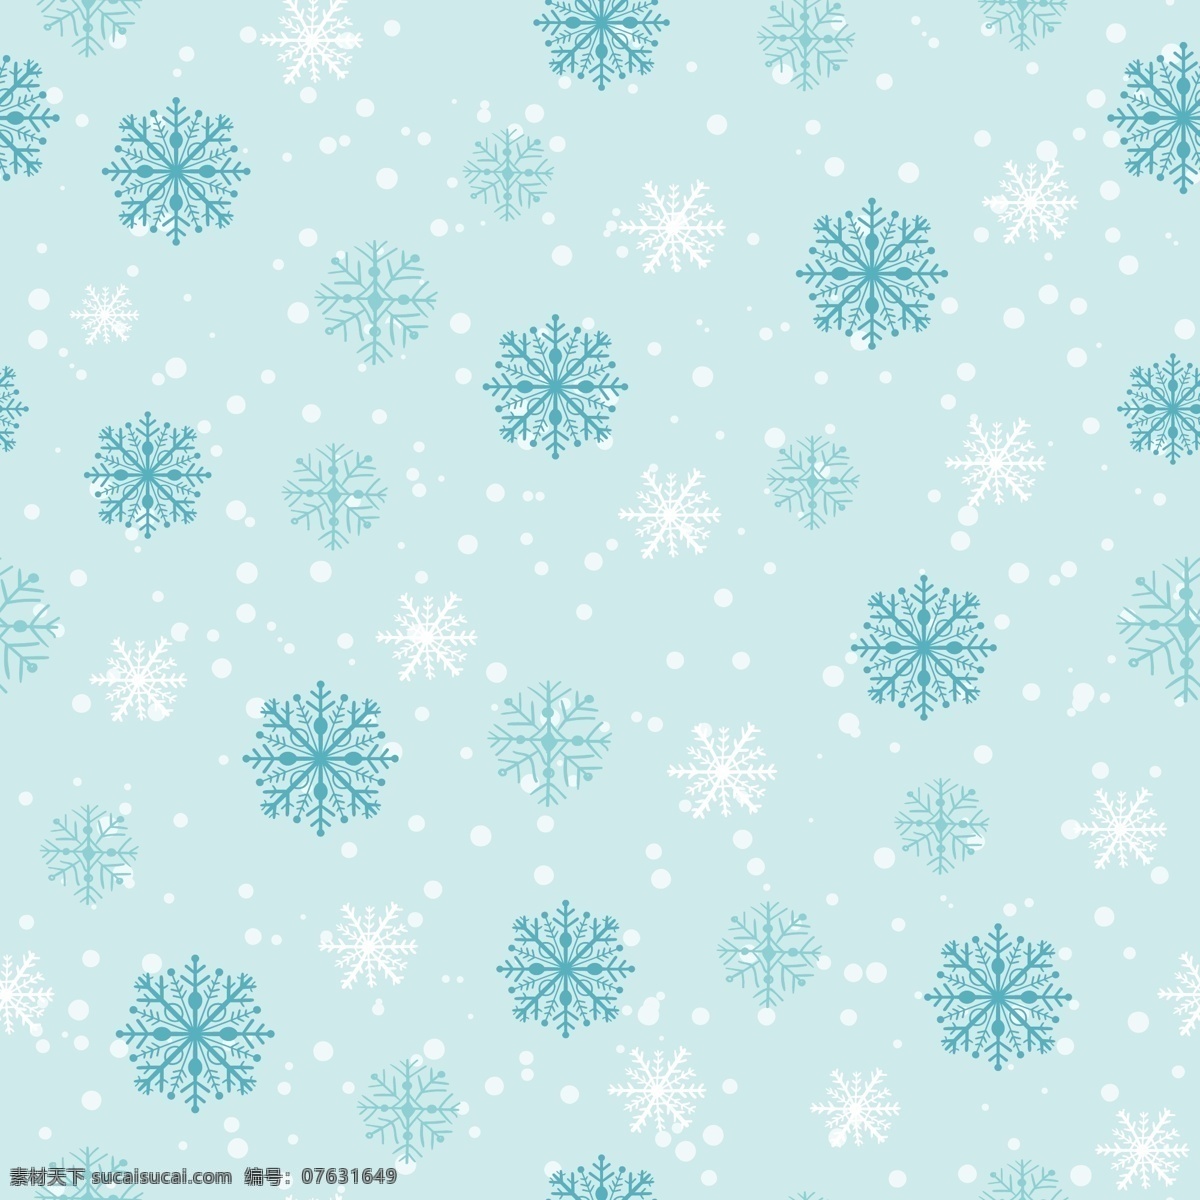 冰雪 圣诞 卡通 矢量 合集 环保 可爱 简约 矢量素材 排列 平面素材